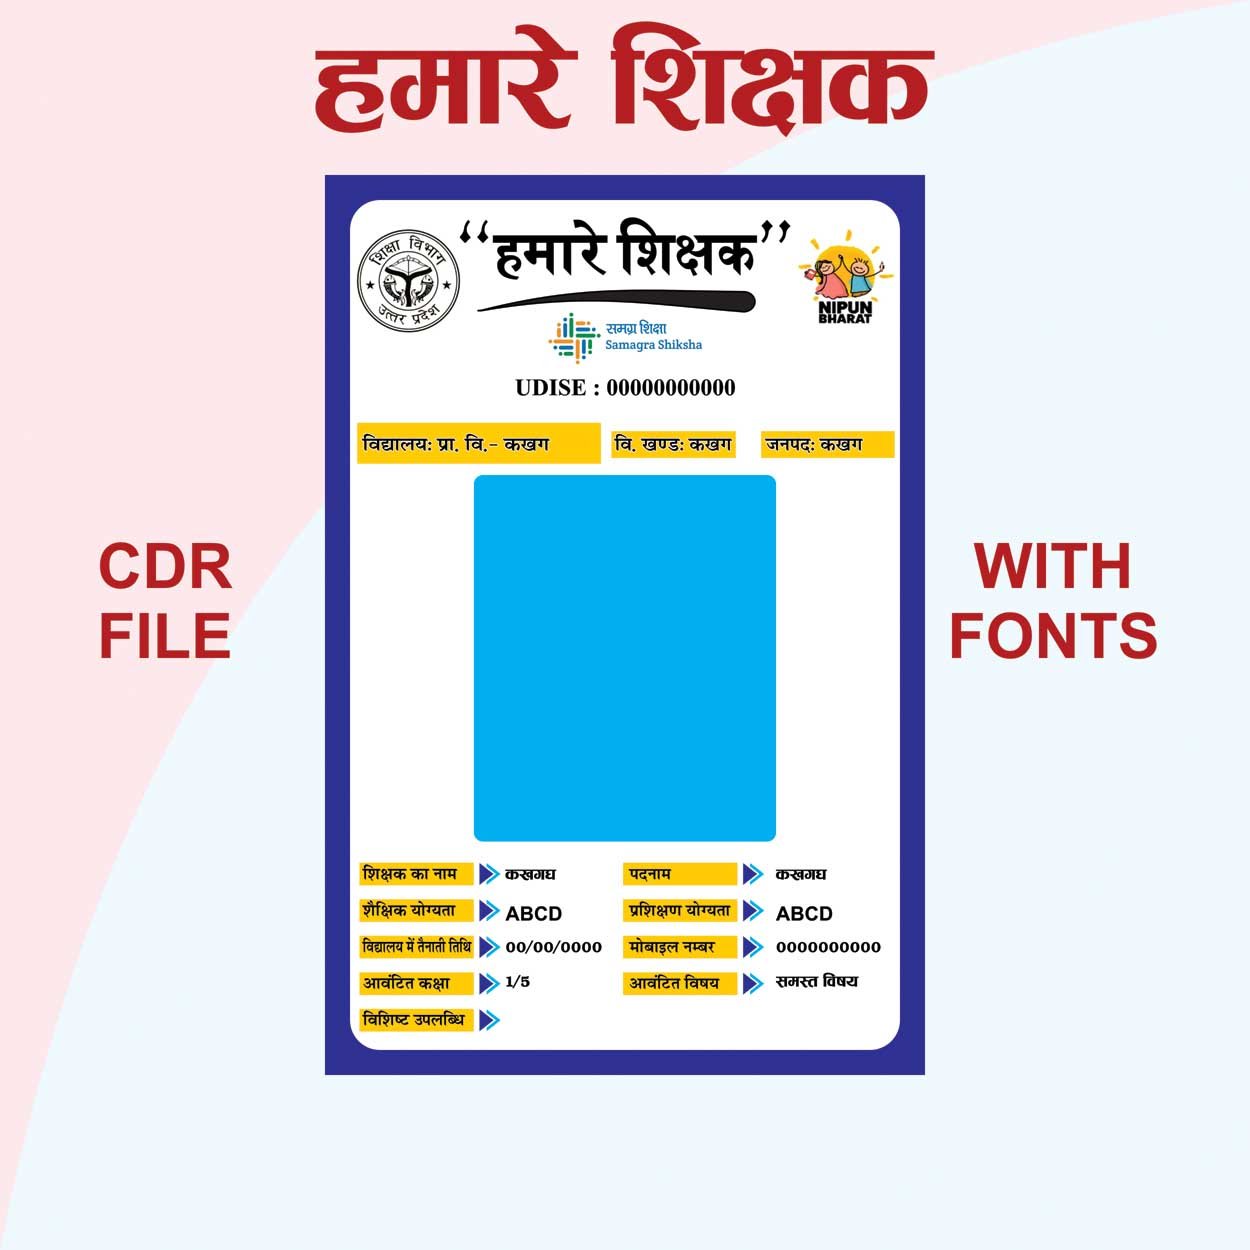 Hamare shikshak new banner cdr file with fonts